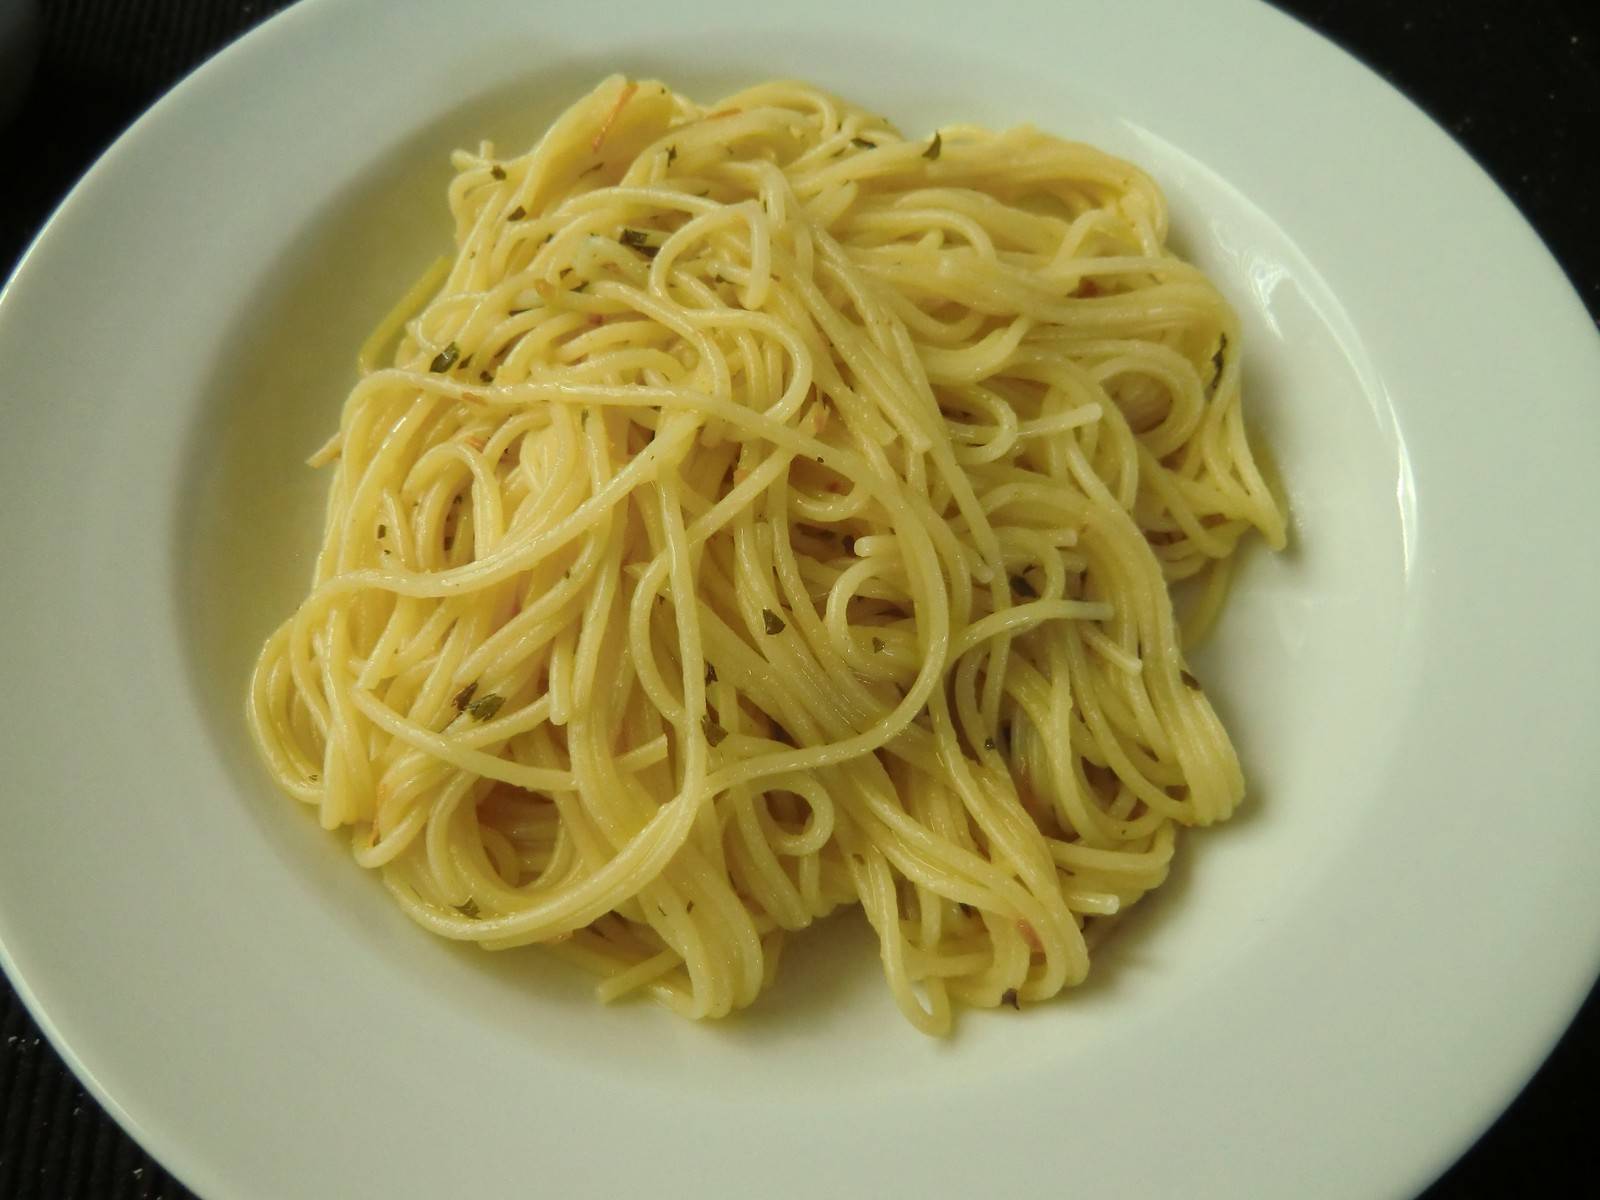 Spaghetti aglio e olio nach Art des Hauses